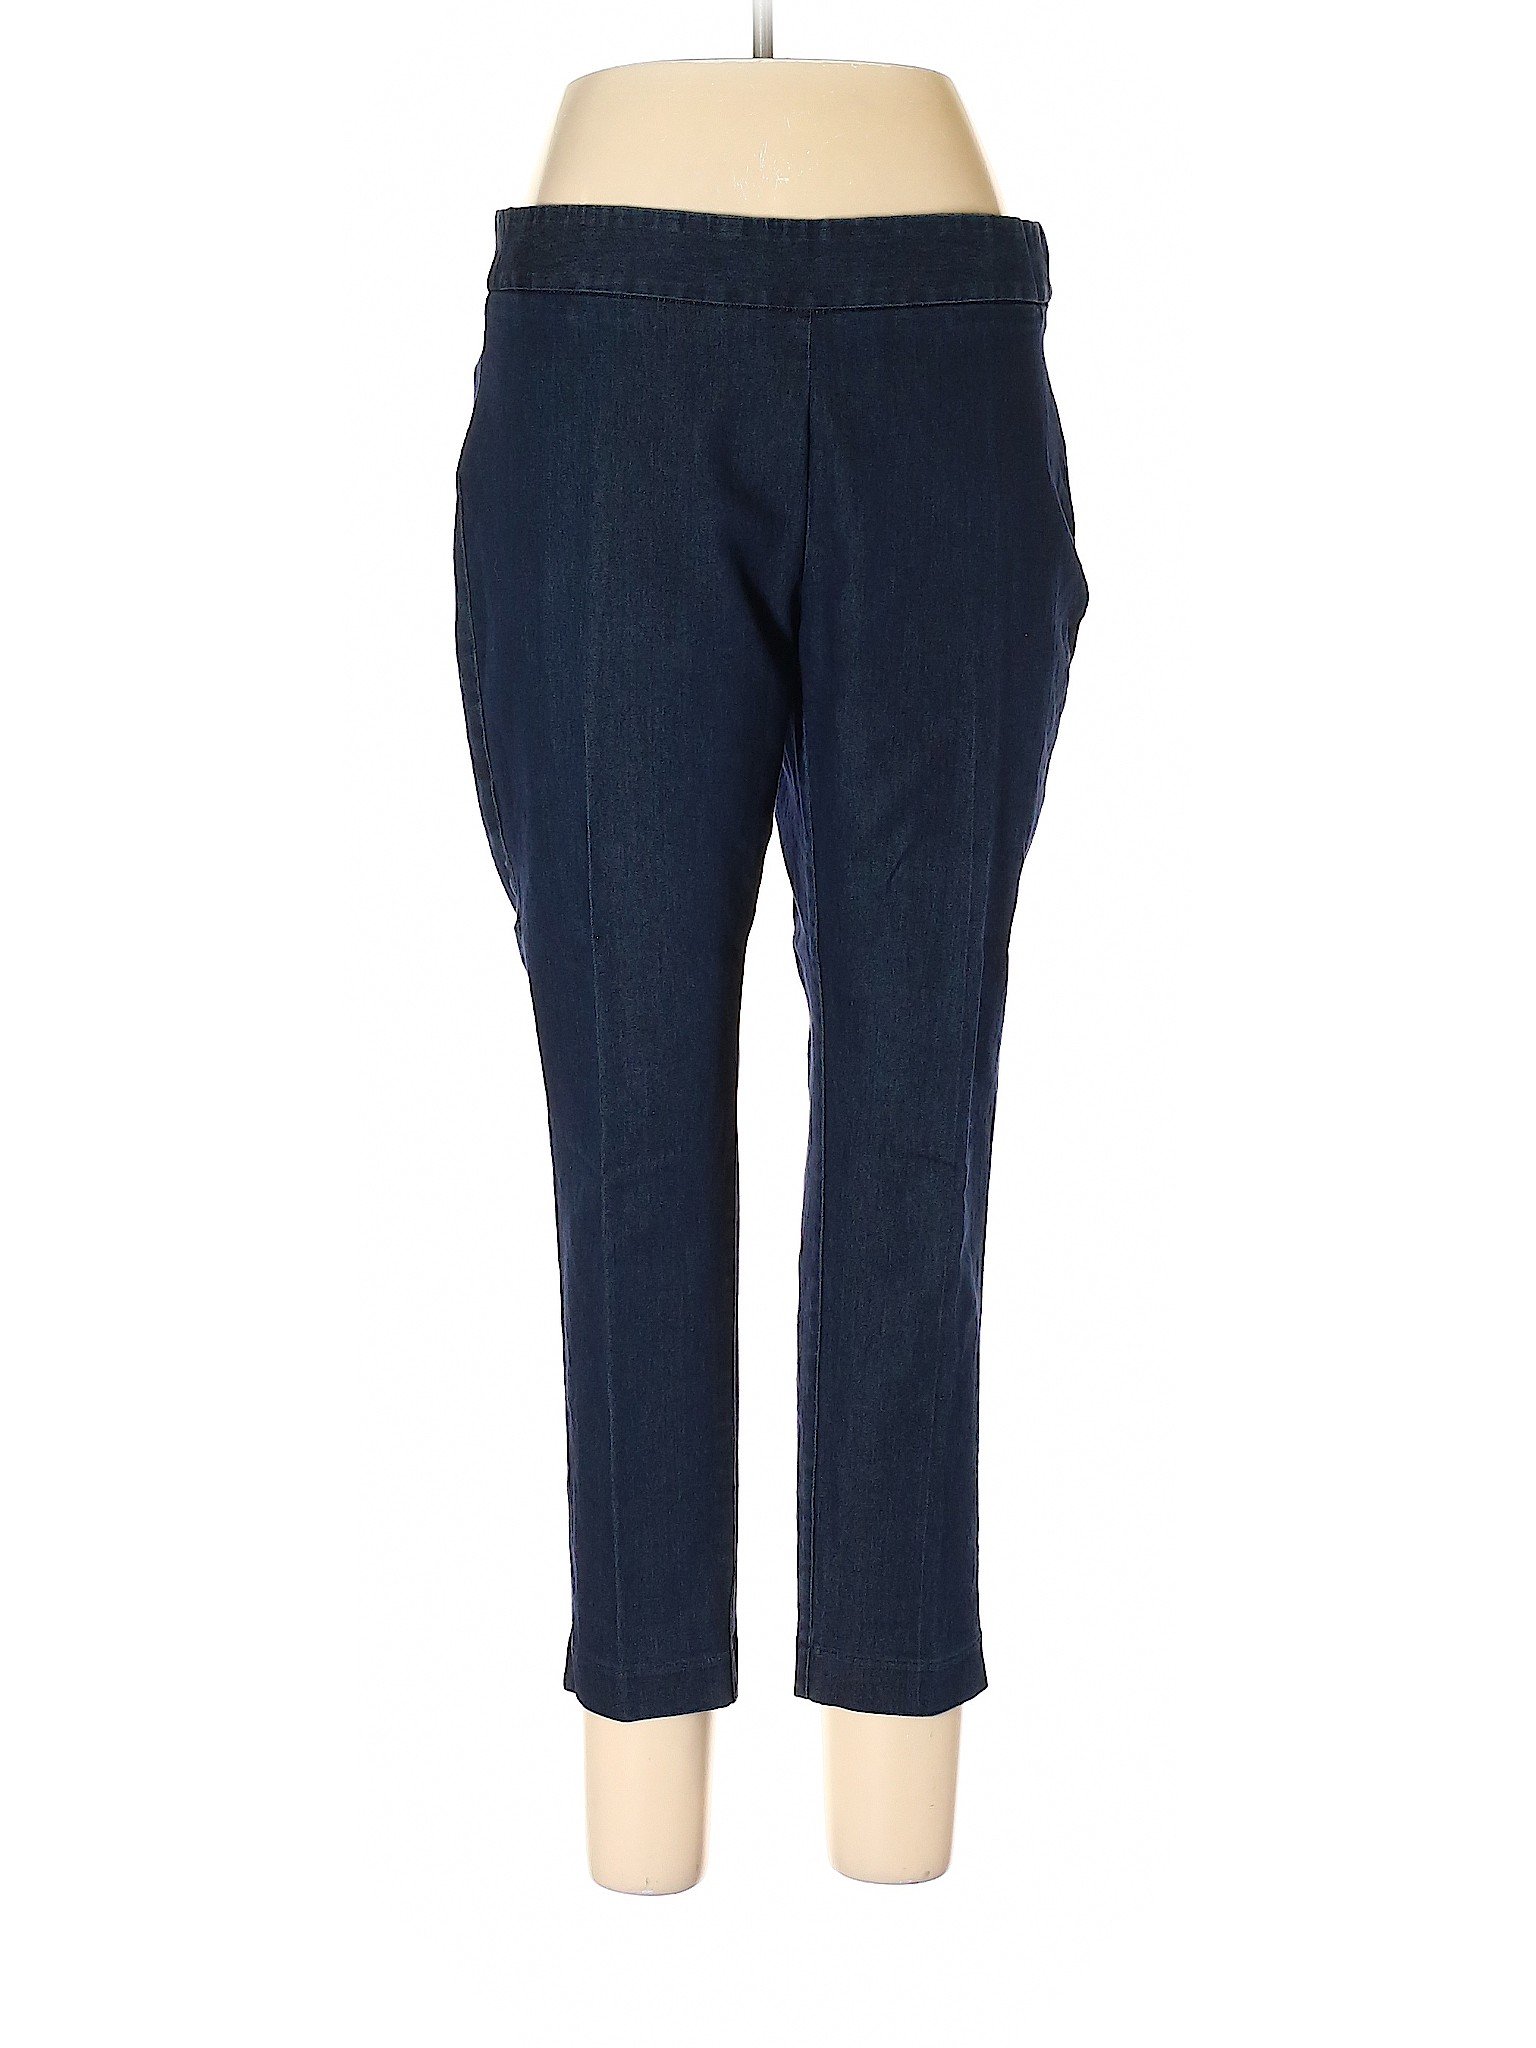 Lands' End Women Blue Casual Pants 12 Petites | eBay